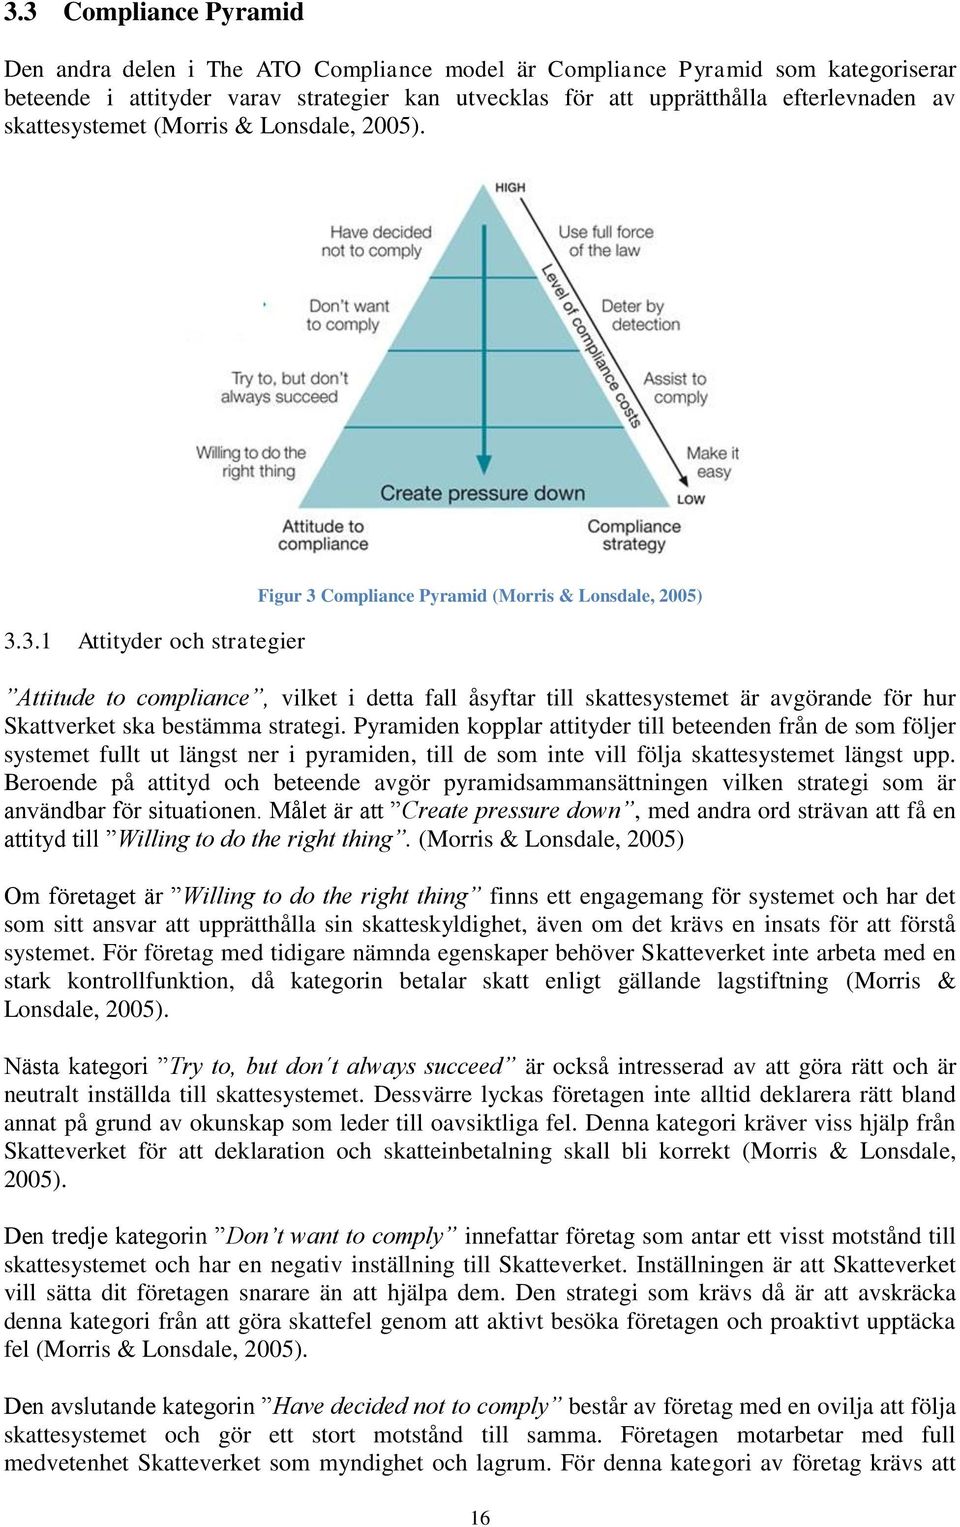 3.1 Attityder och strategier Figur 3 Compliance Pyramid (Morris & Lonsdale, 2005) Attitude to compliance, vilket i detta fall åsyftar till skattesystemet är avgörande för hur Skattverket ska bestämma